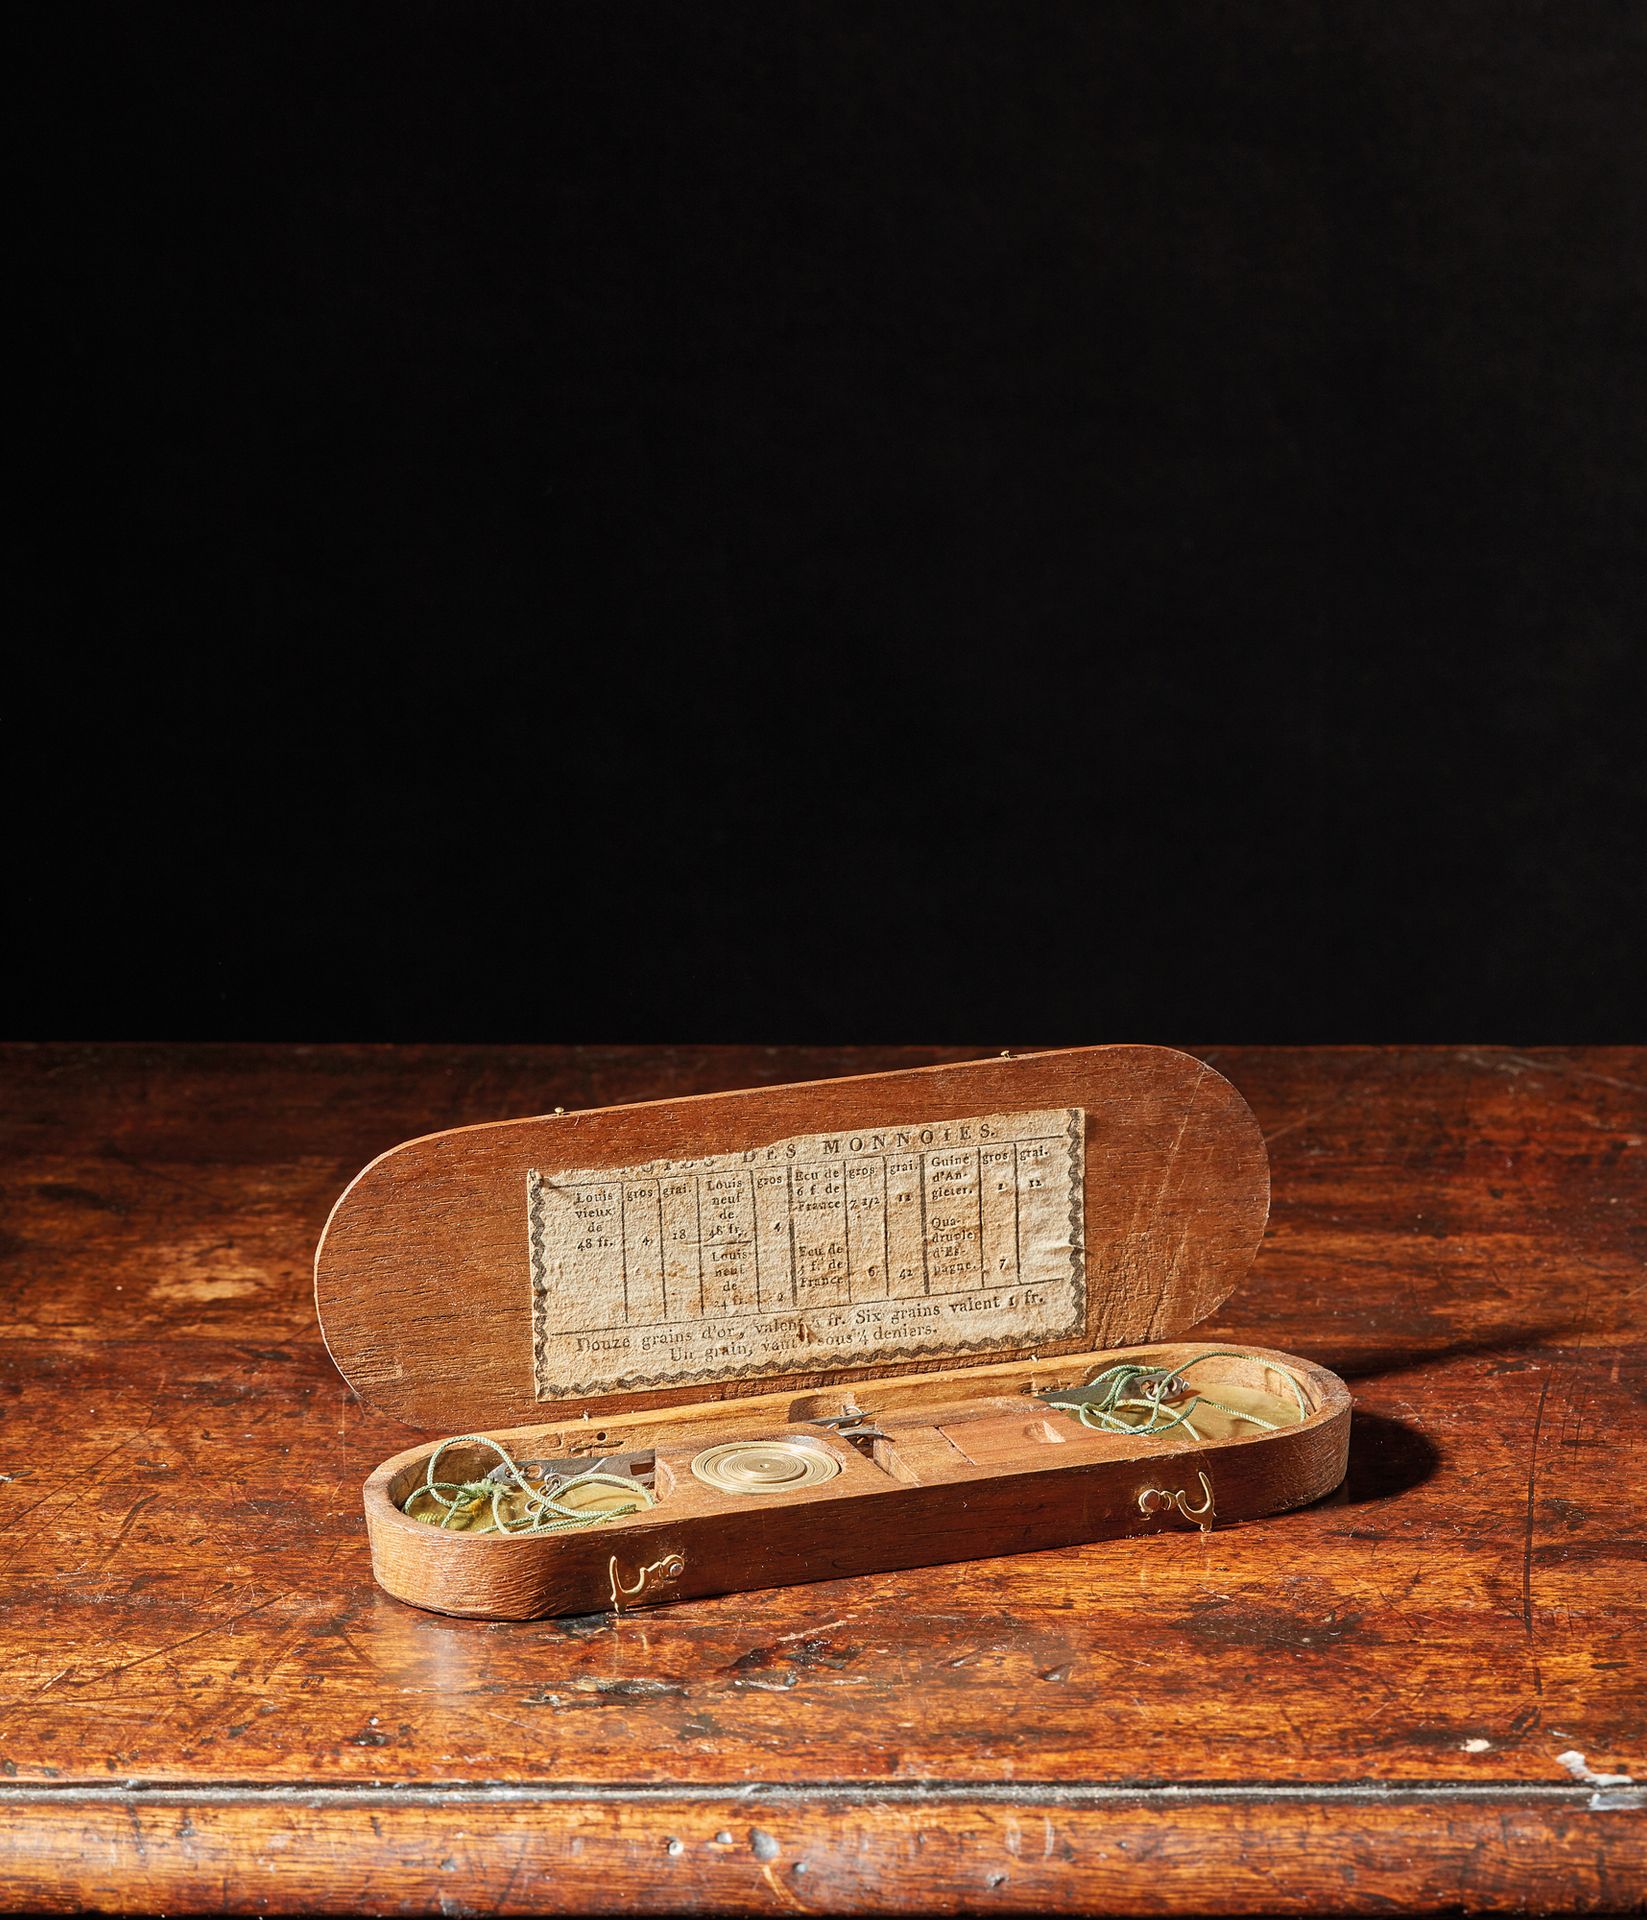 Null 装在一个金色木箱中的钱币兑换商的投石机及其砝码
法国，18世纪